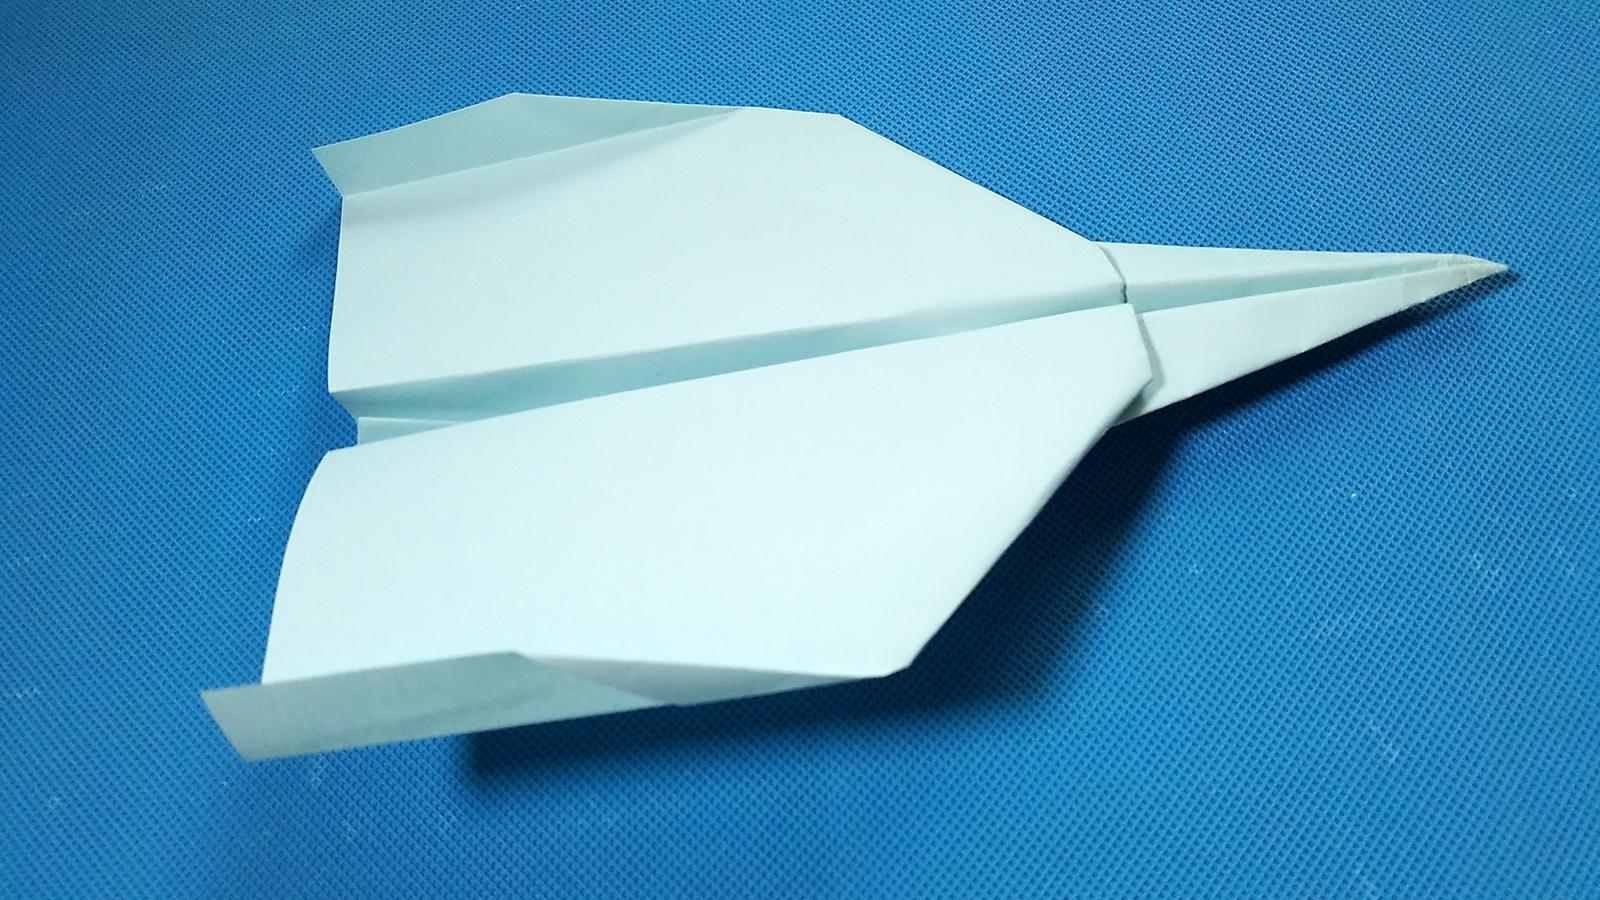 折纸王子:能飞很远的折纸飞机 第二款 讲解详细 清楚易学 形象逼真 跟